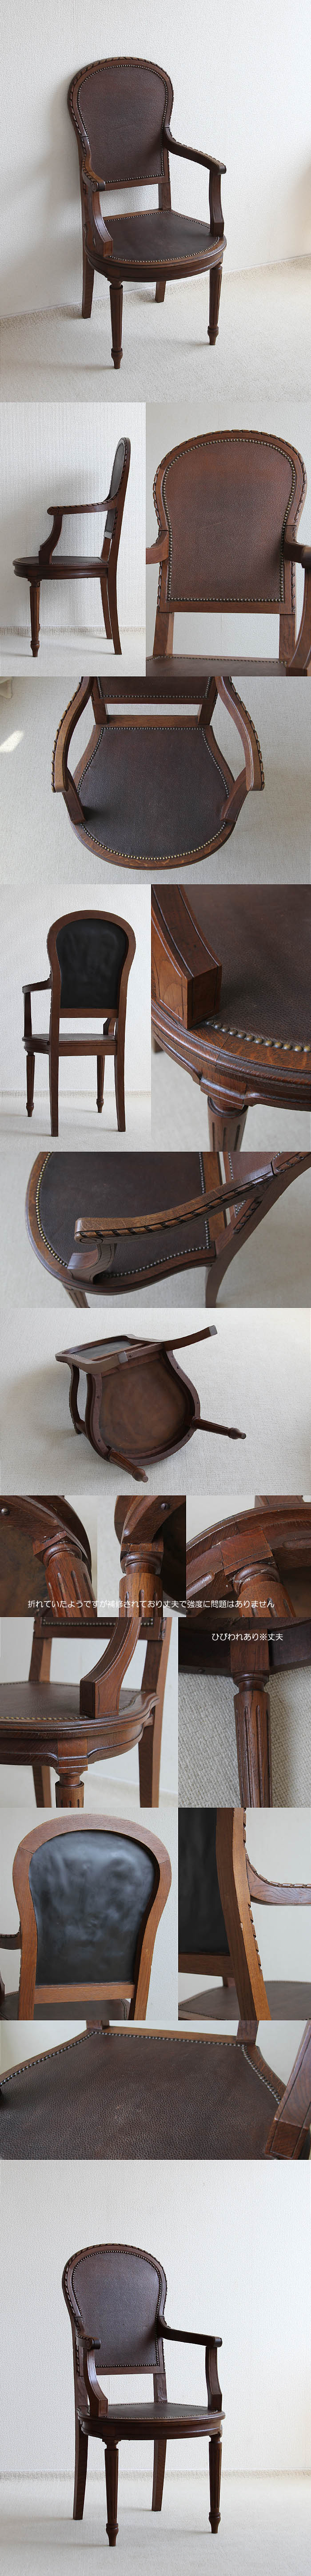 イギリス アンティーク アームチェア レザー 革張り オーク材 木製椅子 家具 V-177